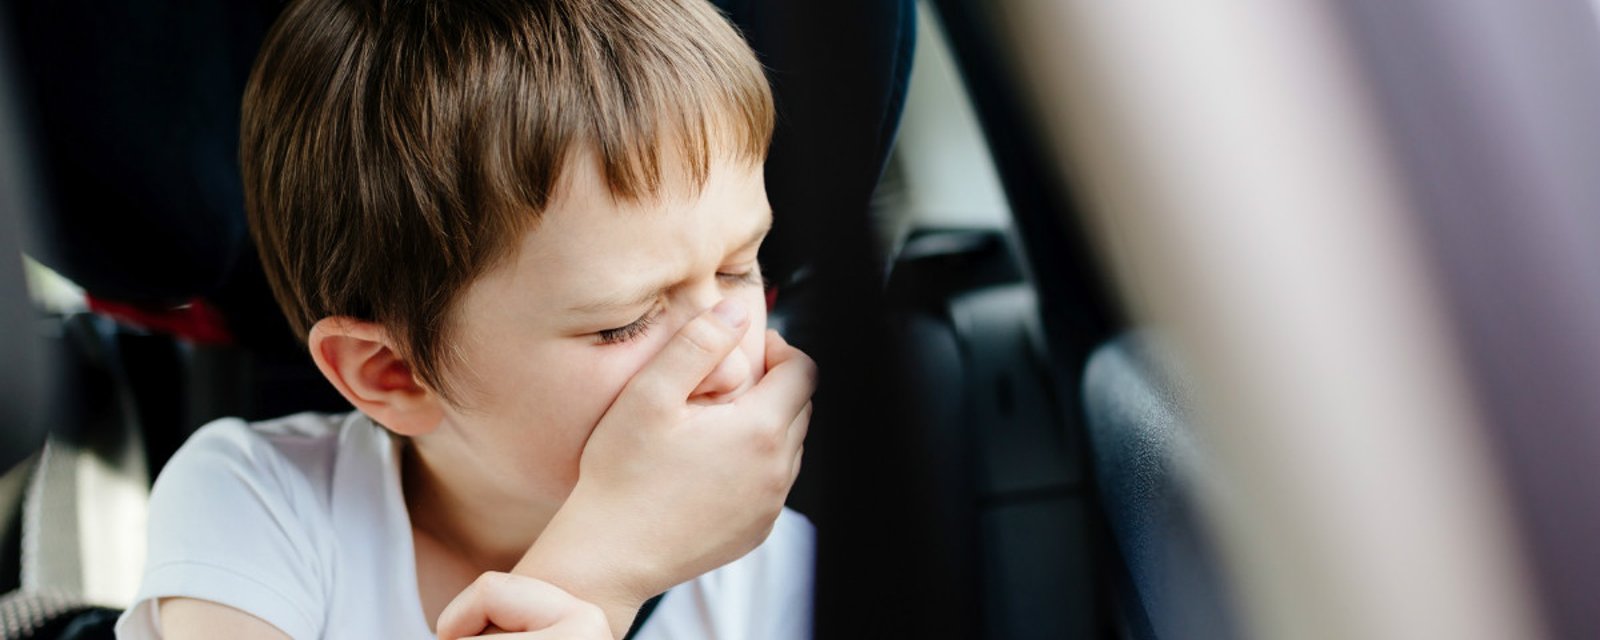 Si votre enfant est souvent malade en voiture, gardez toujours ce produit dans la boîte à gants!